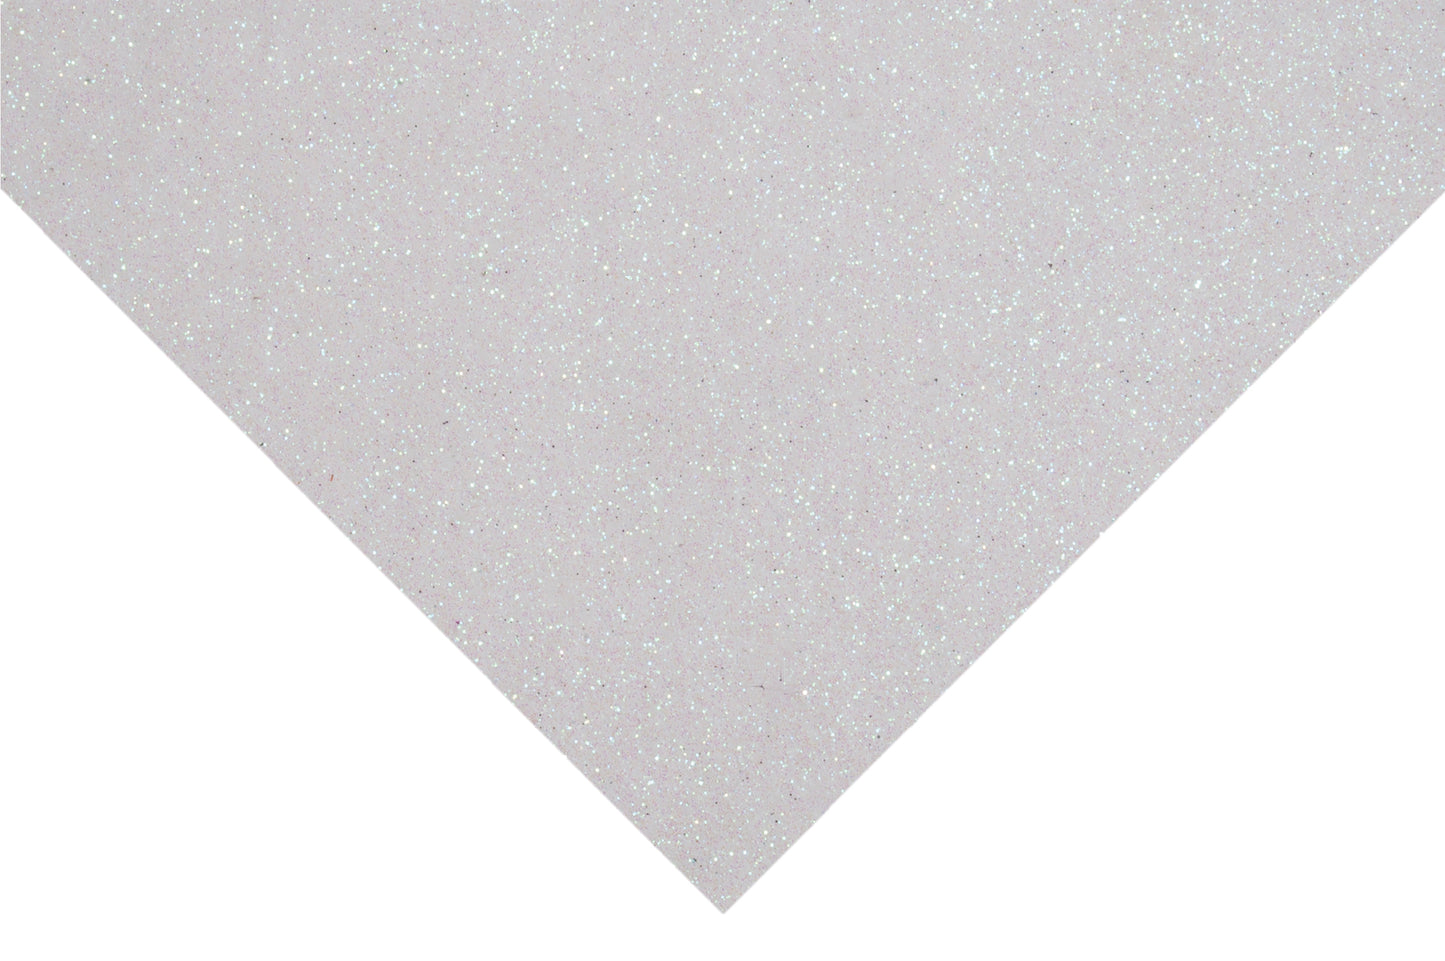 Trimits Glitter Felt 30x23cm White x 10